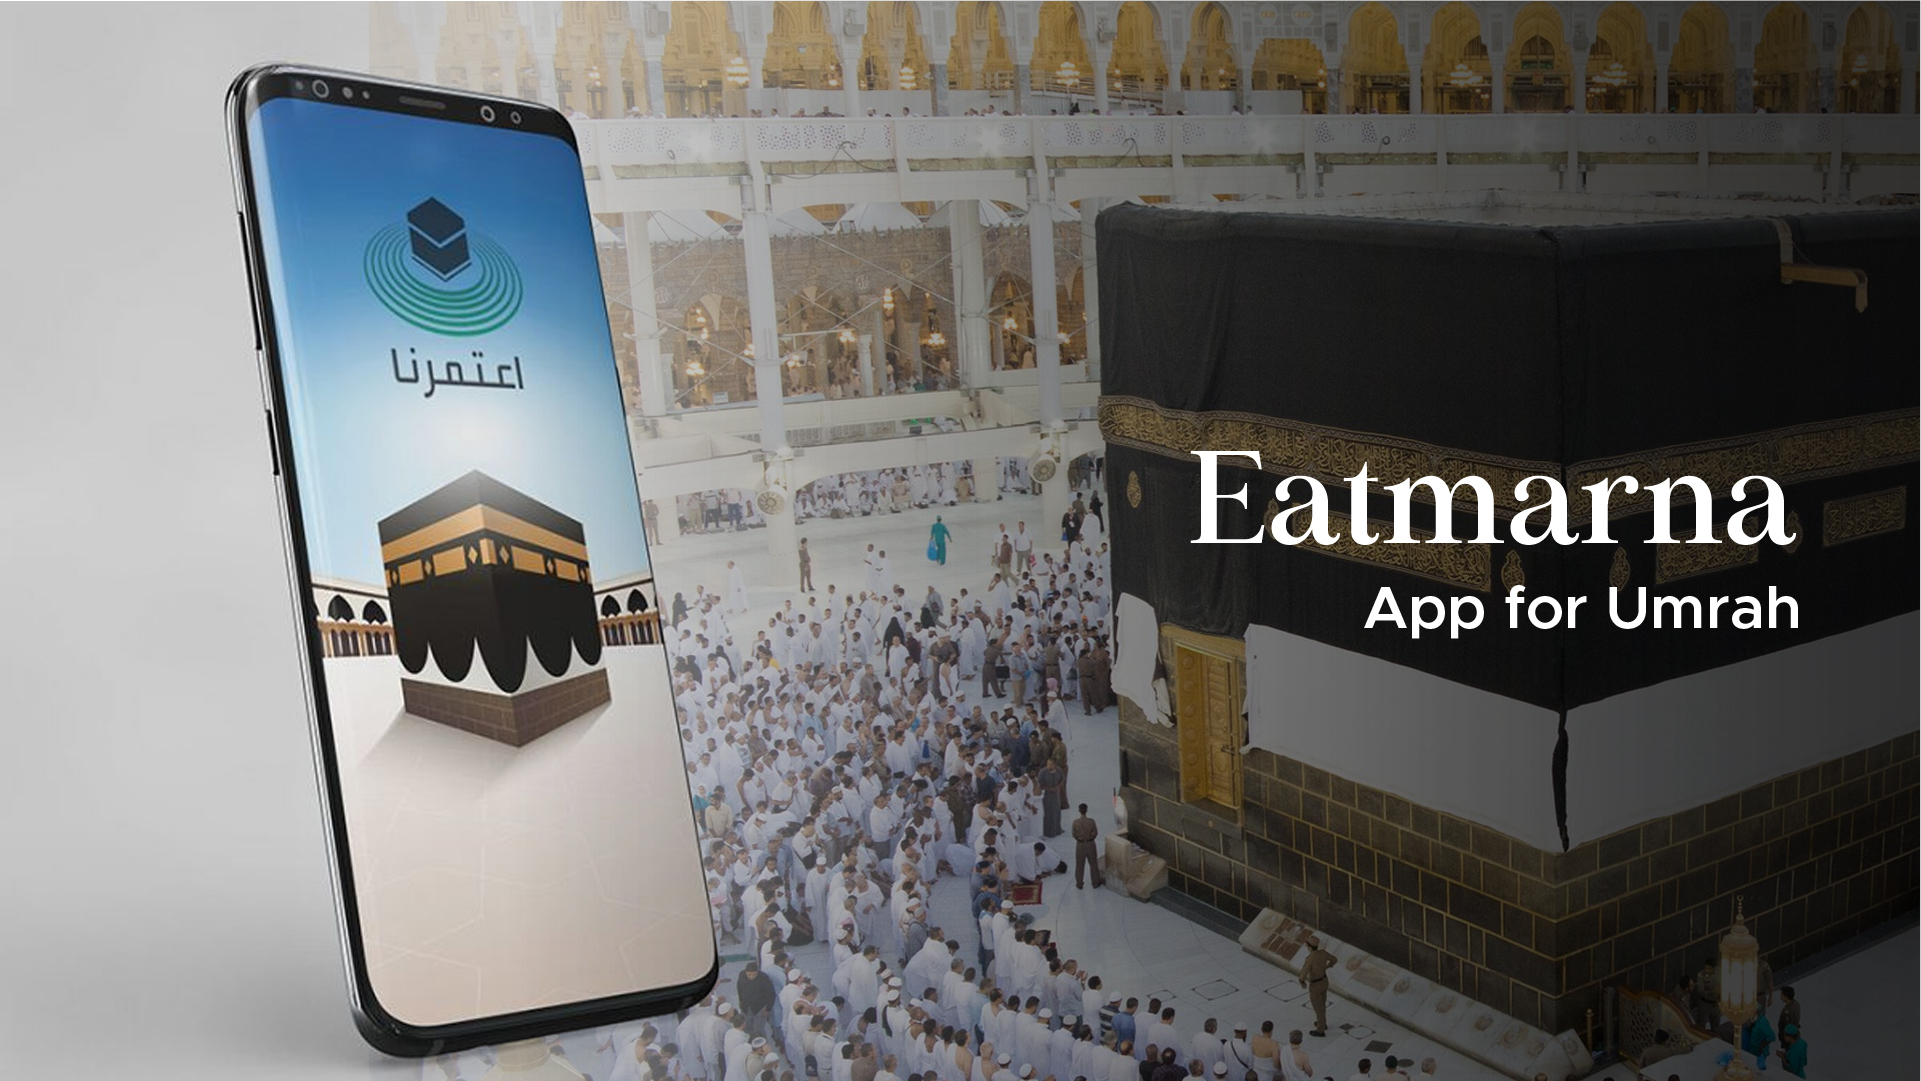 Best App for Umrah Eatmarna